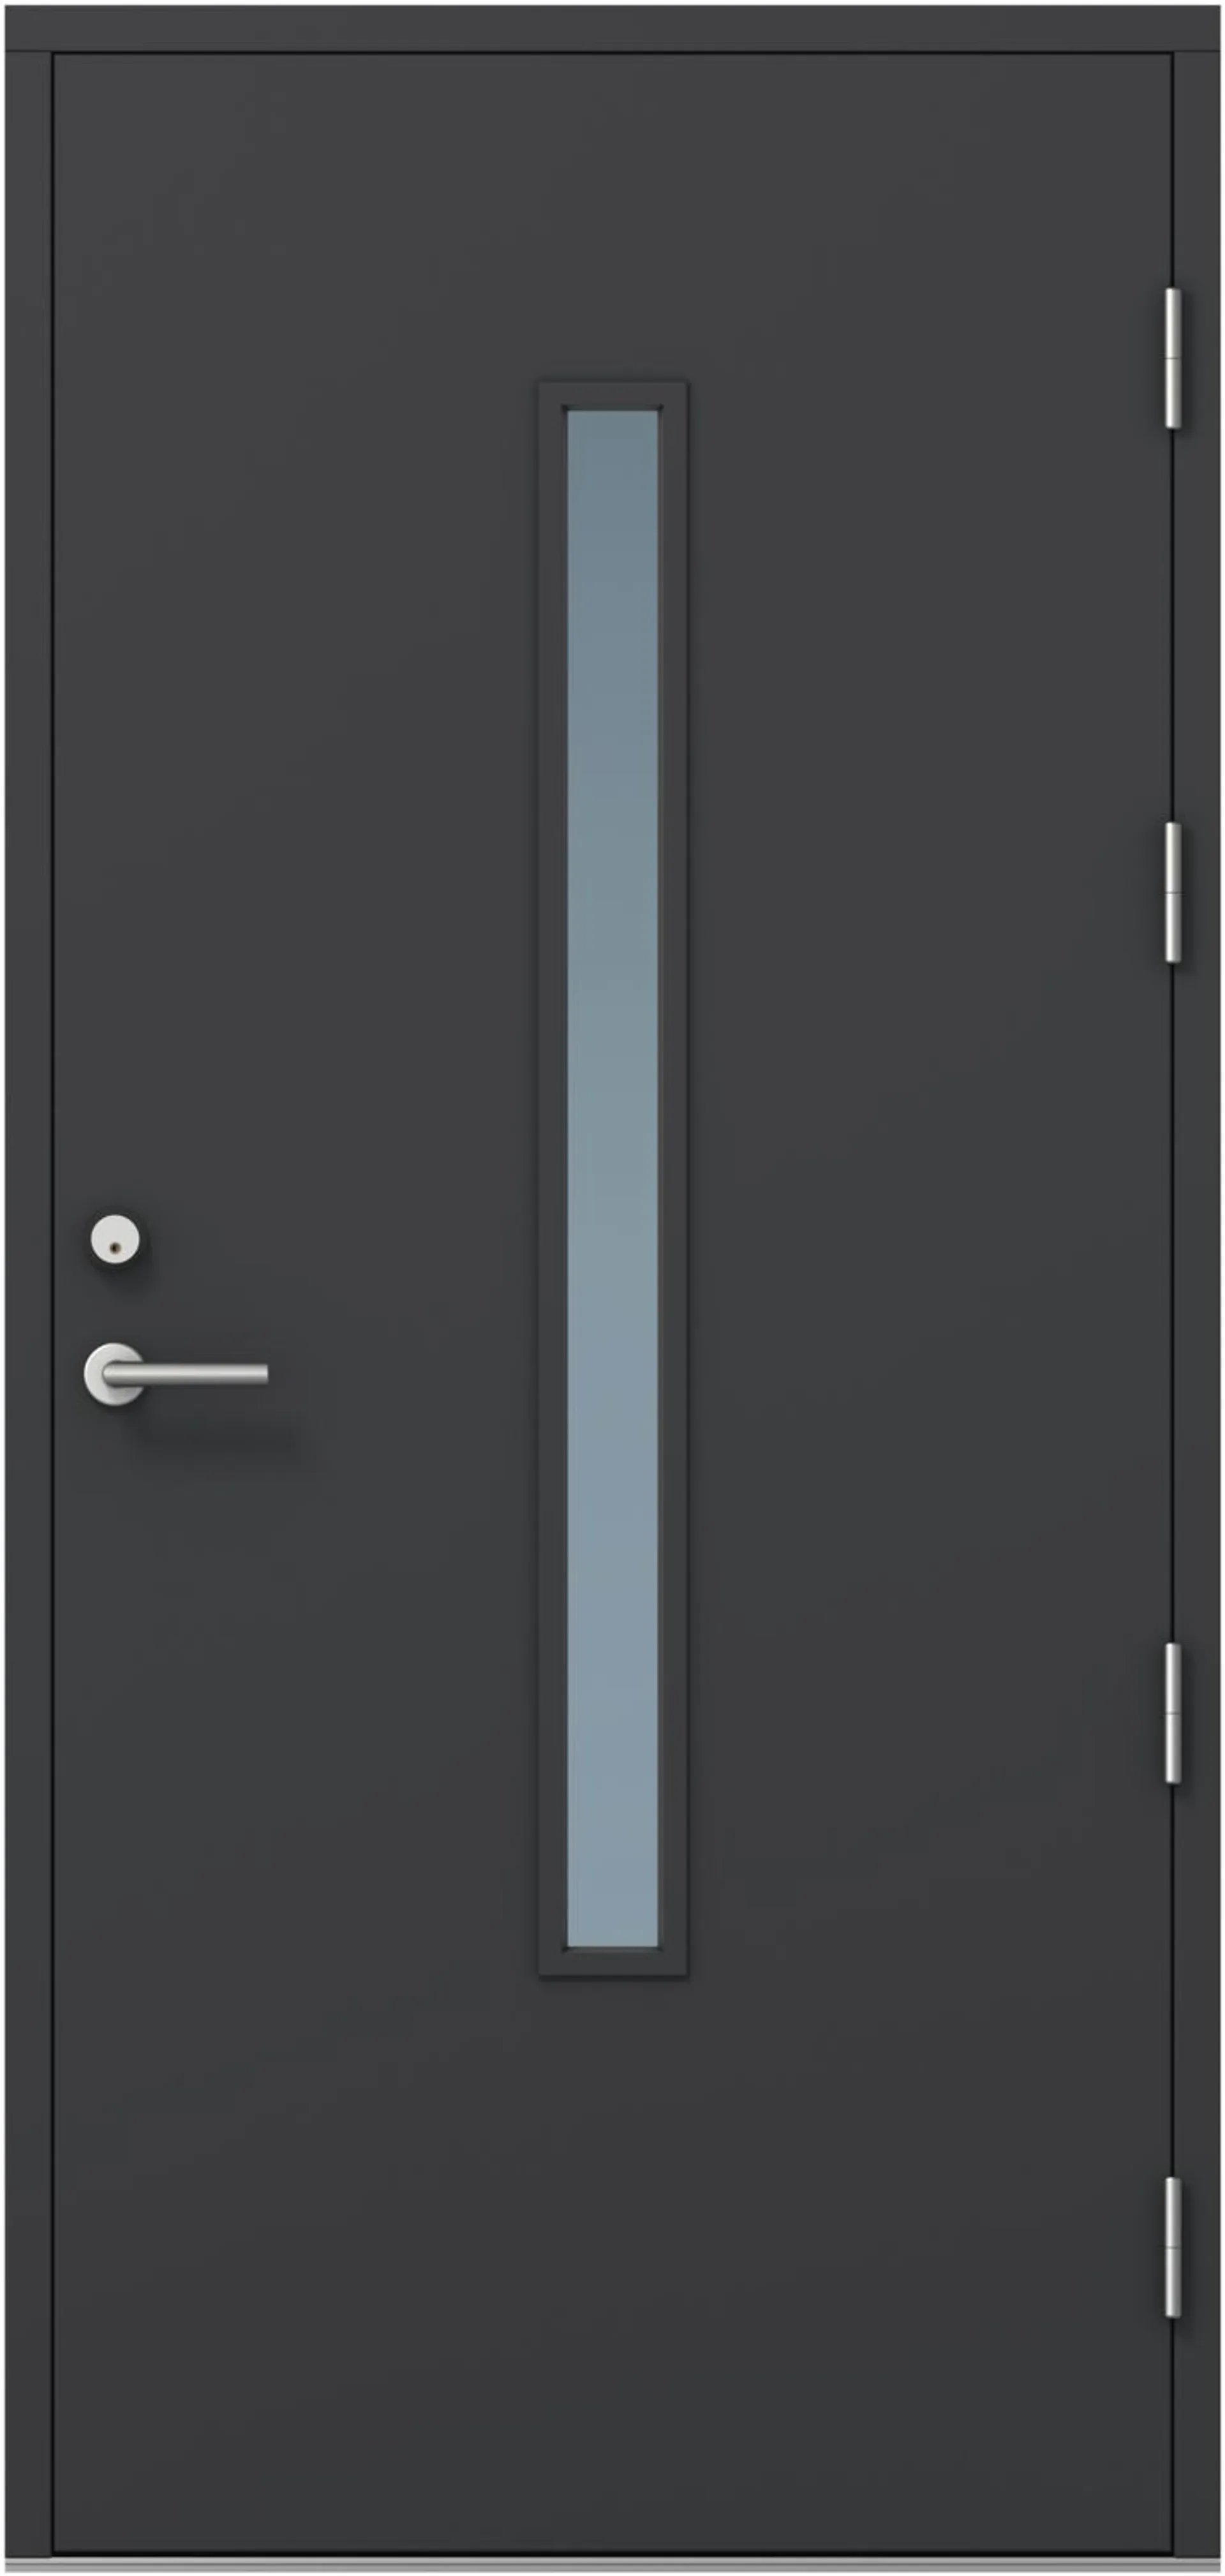 KASKI-ulko-ovi FE-810 pitkällä lasilla, tumman harmaa, 9x21 oikea, kynnys öljytty koivu, karmi 115mm